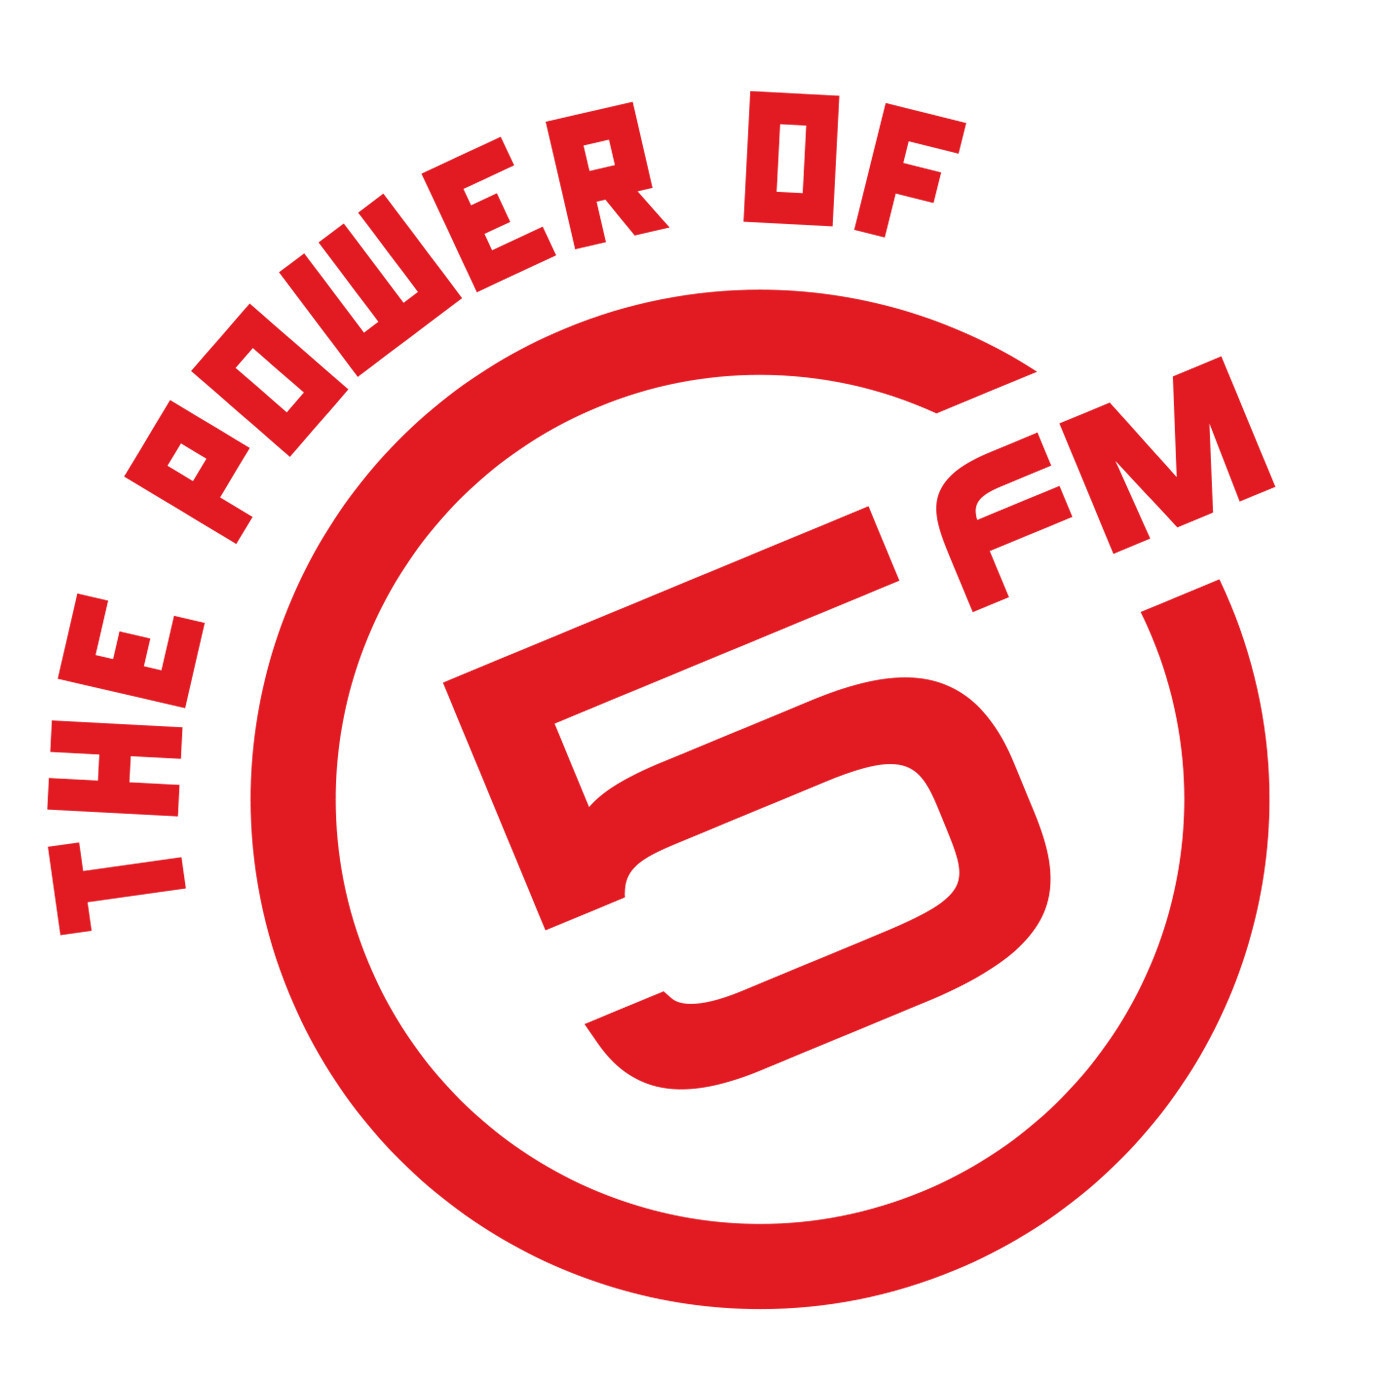 5FM LEGENDS LADY LEA (2 APRIL)